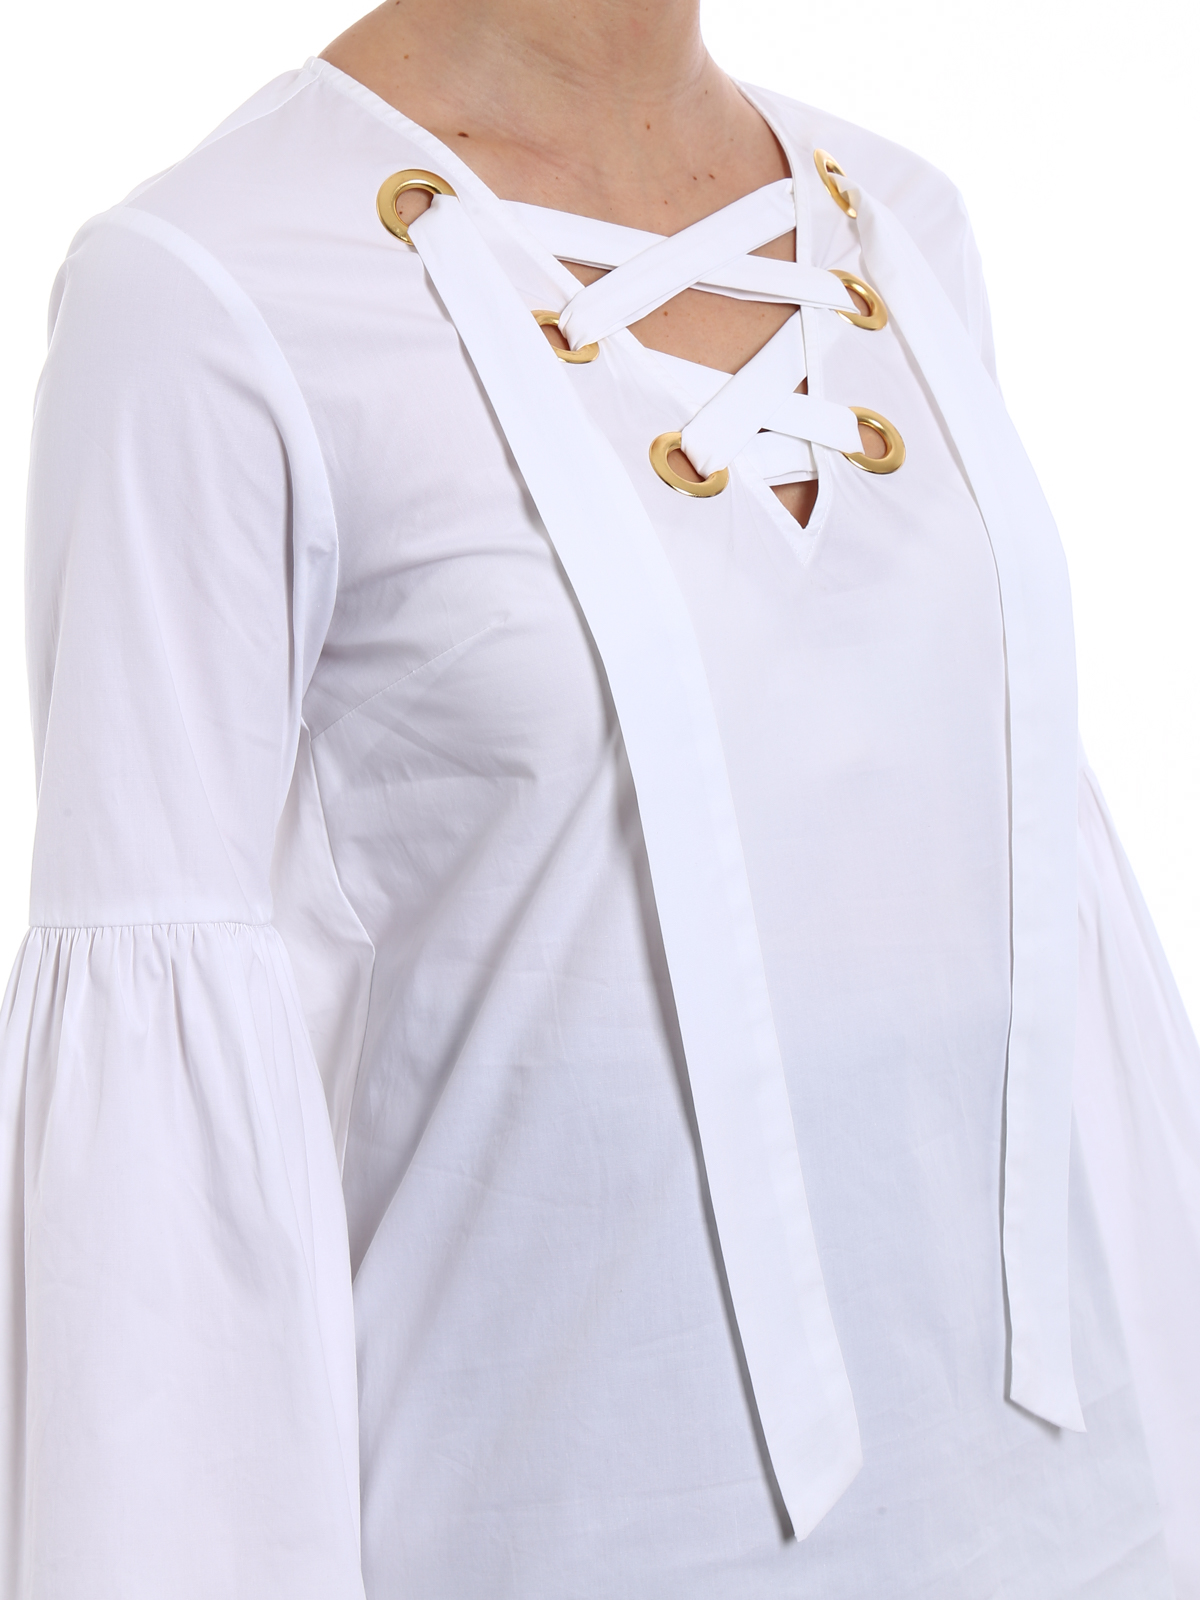 Michael Kors - Bell sleeved white 